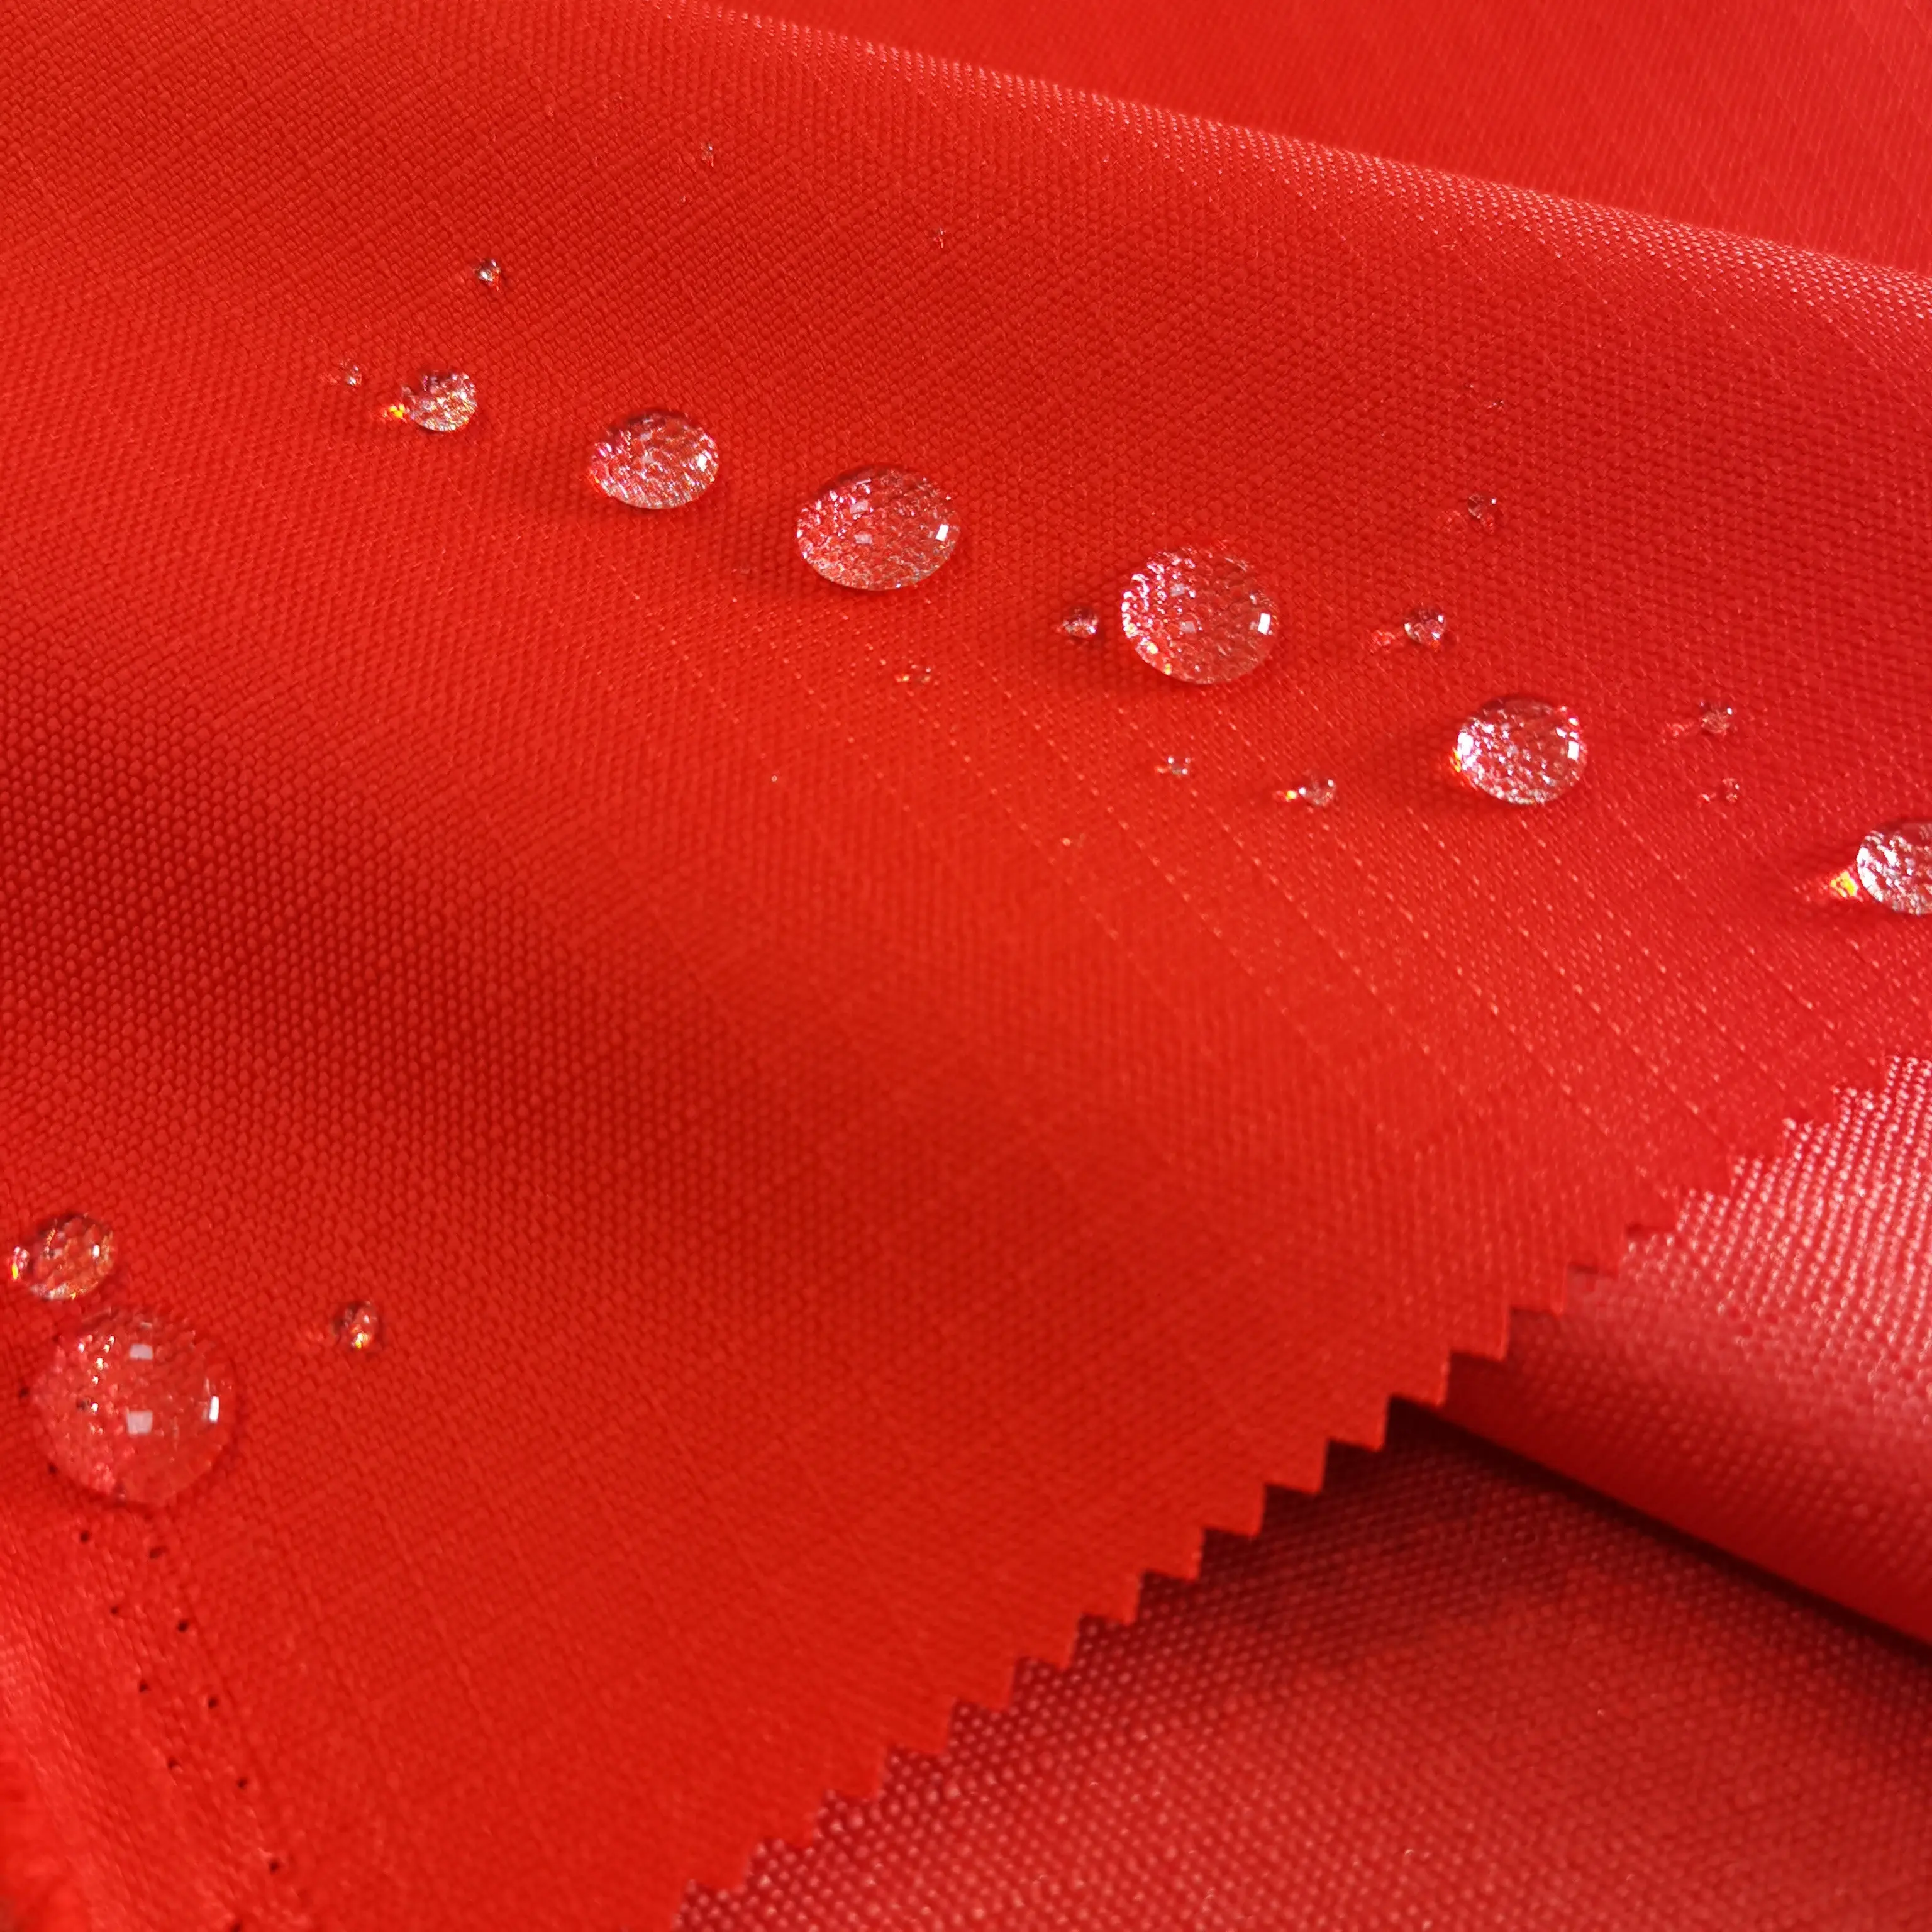 Chất lượng cao 100% Polyester 600D Ripstop PU tráng Oxford vải không thấm nước Windproof cho hành lý ngoài trời Túi xách may mặc/lều